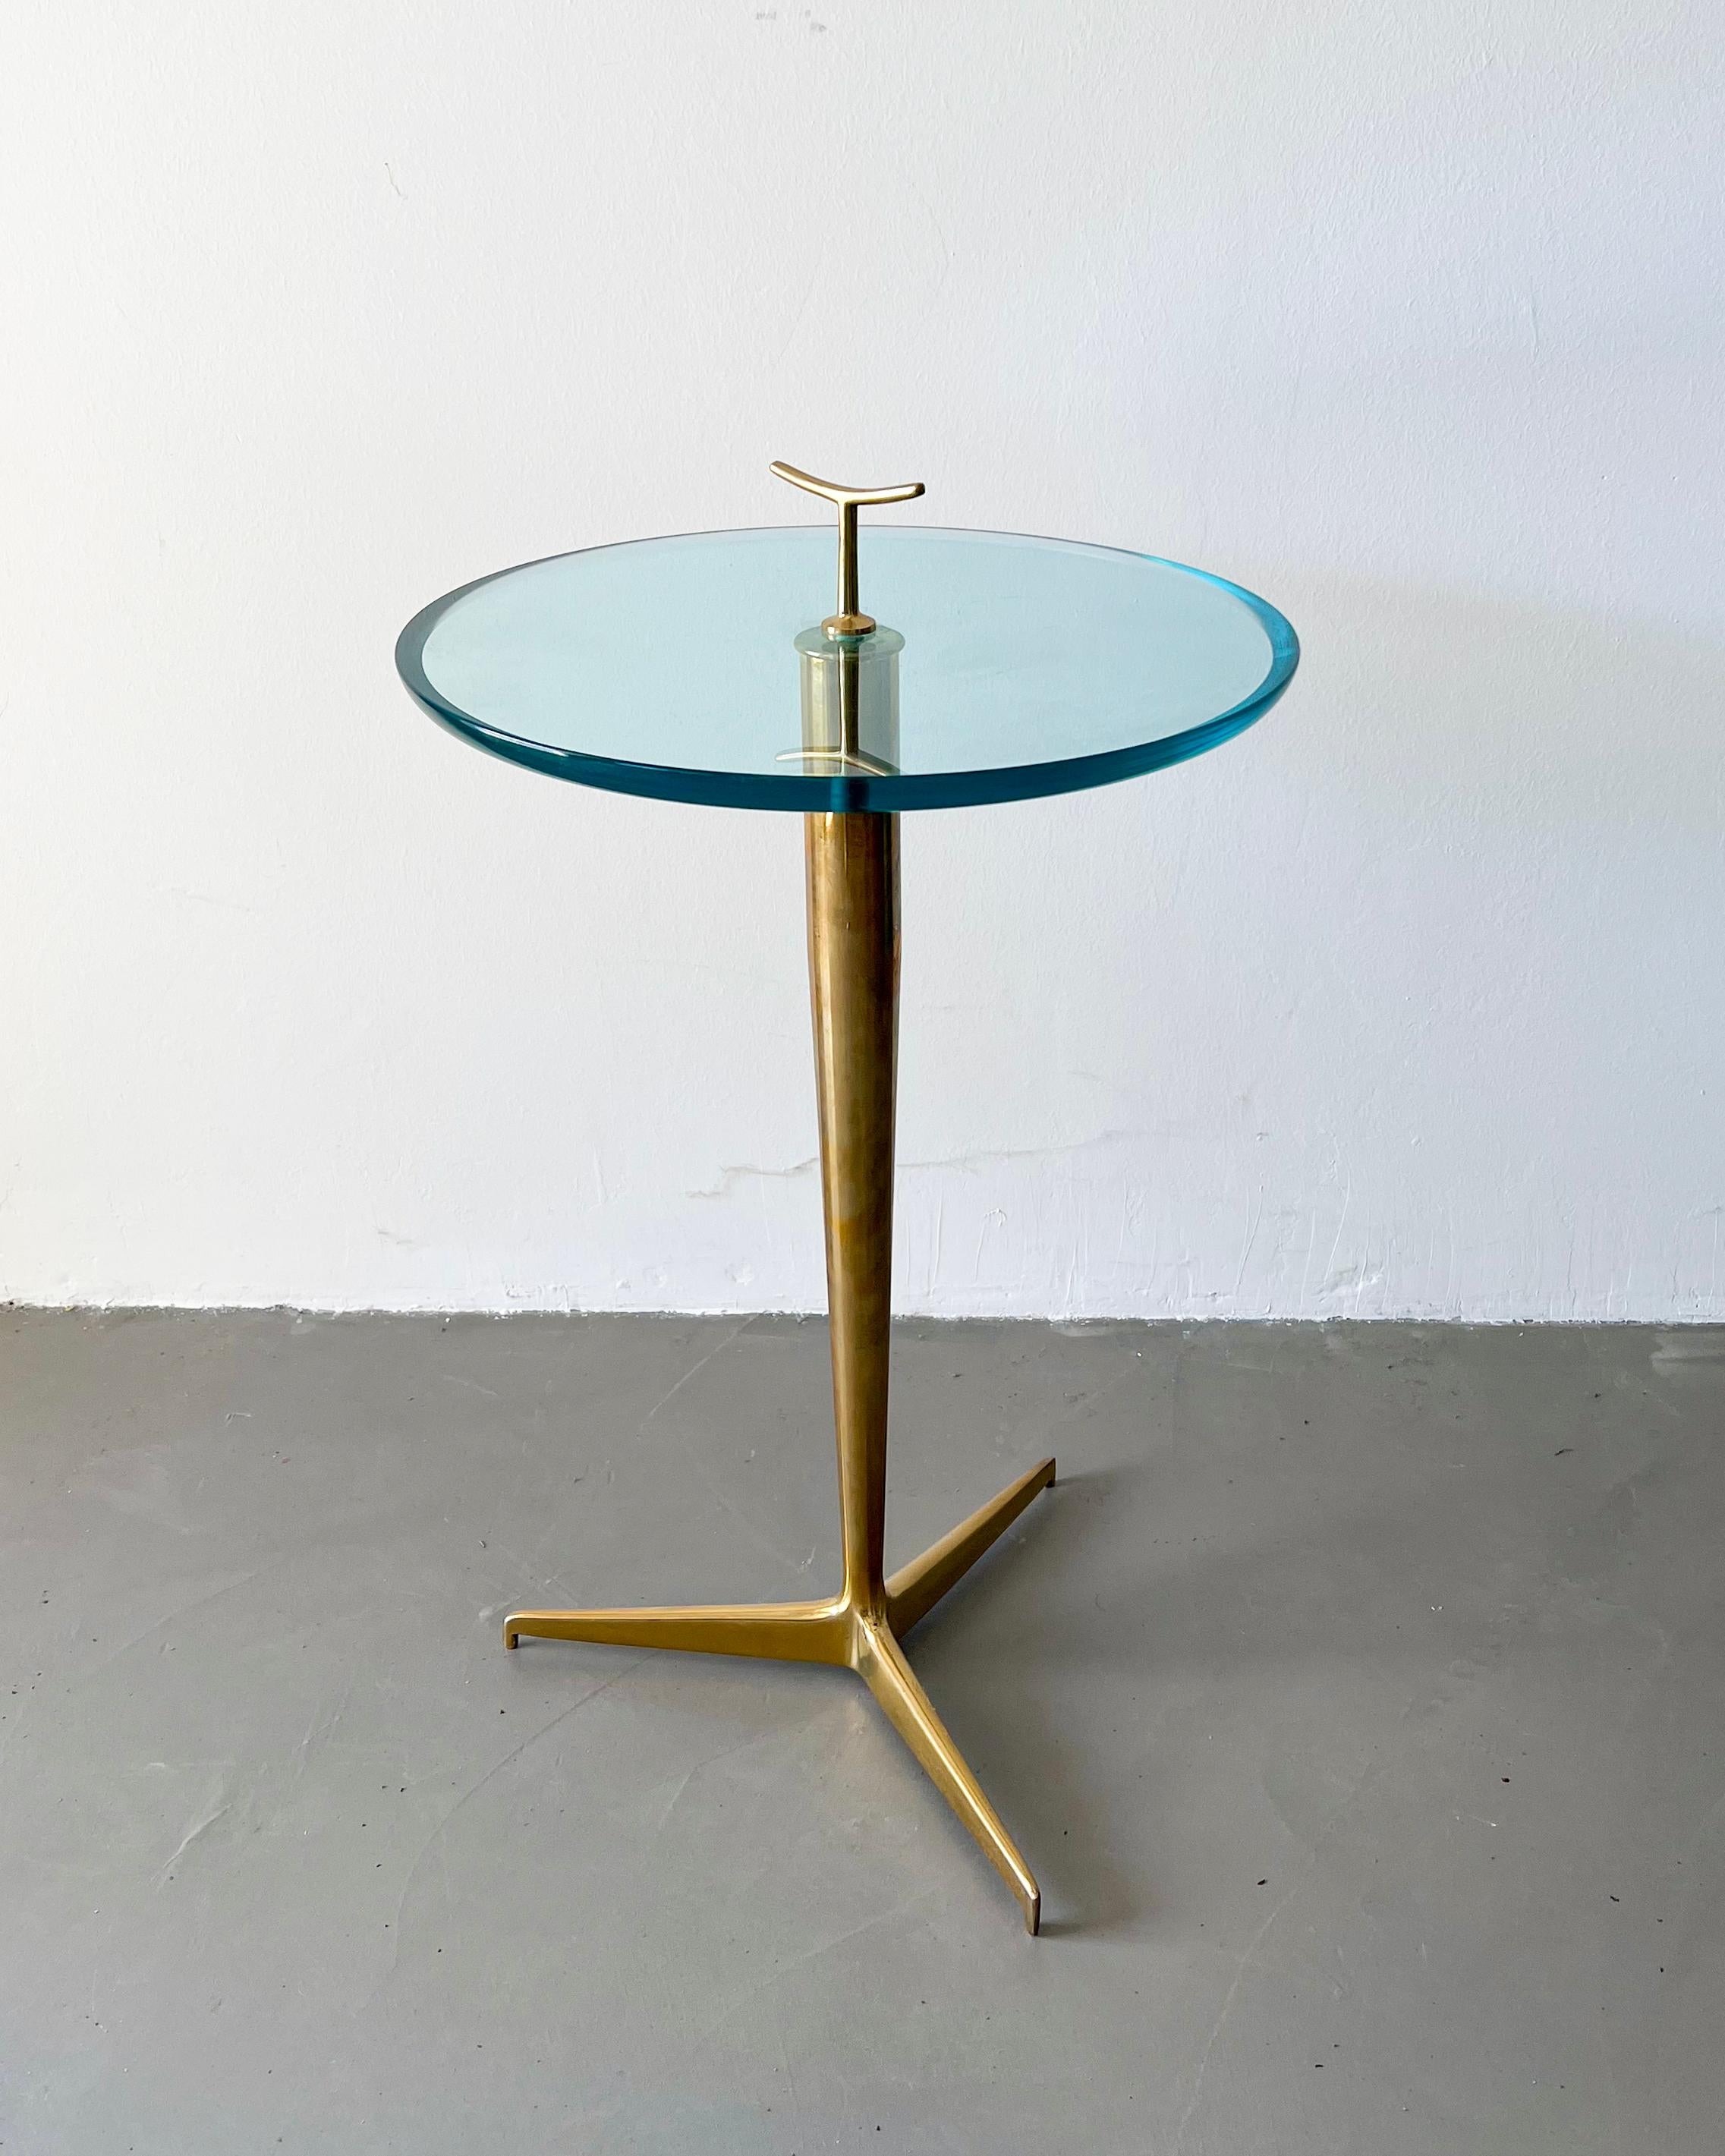 Table d'appoint en laiton et verre moderniste - Italian Design 50's

La pièce, conservée en très bon état d'origine, est une merveilleuse et sculpturale table d'appoint du designer italien Giuseppe Ostuni. 
Intemporelle et très élégante, cette pièce